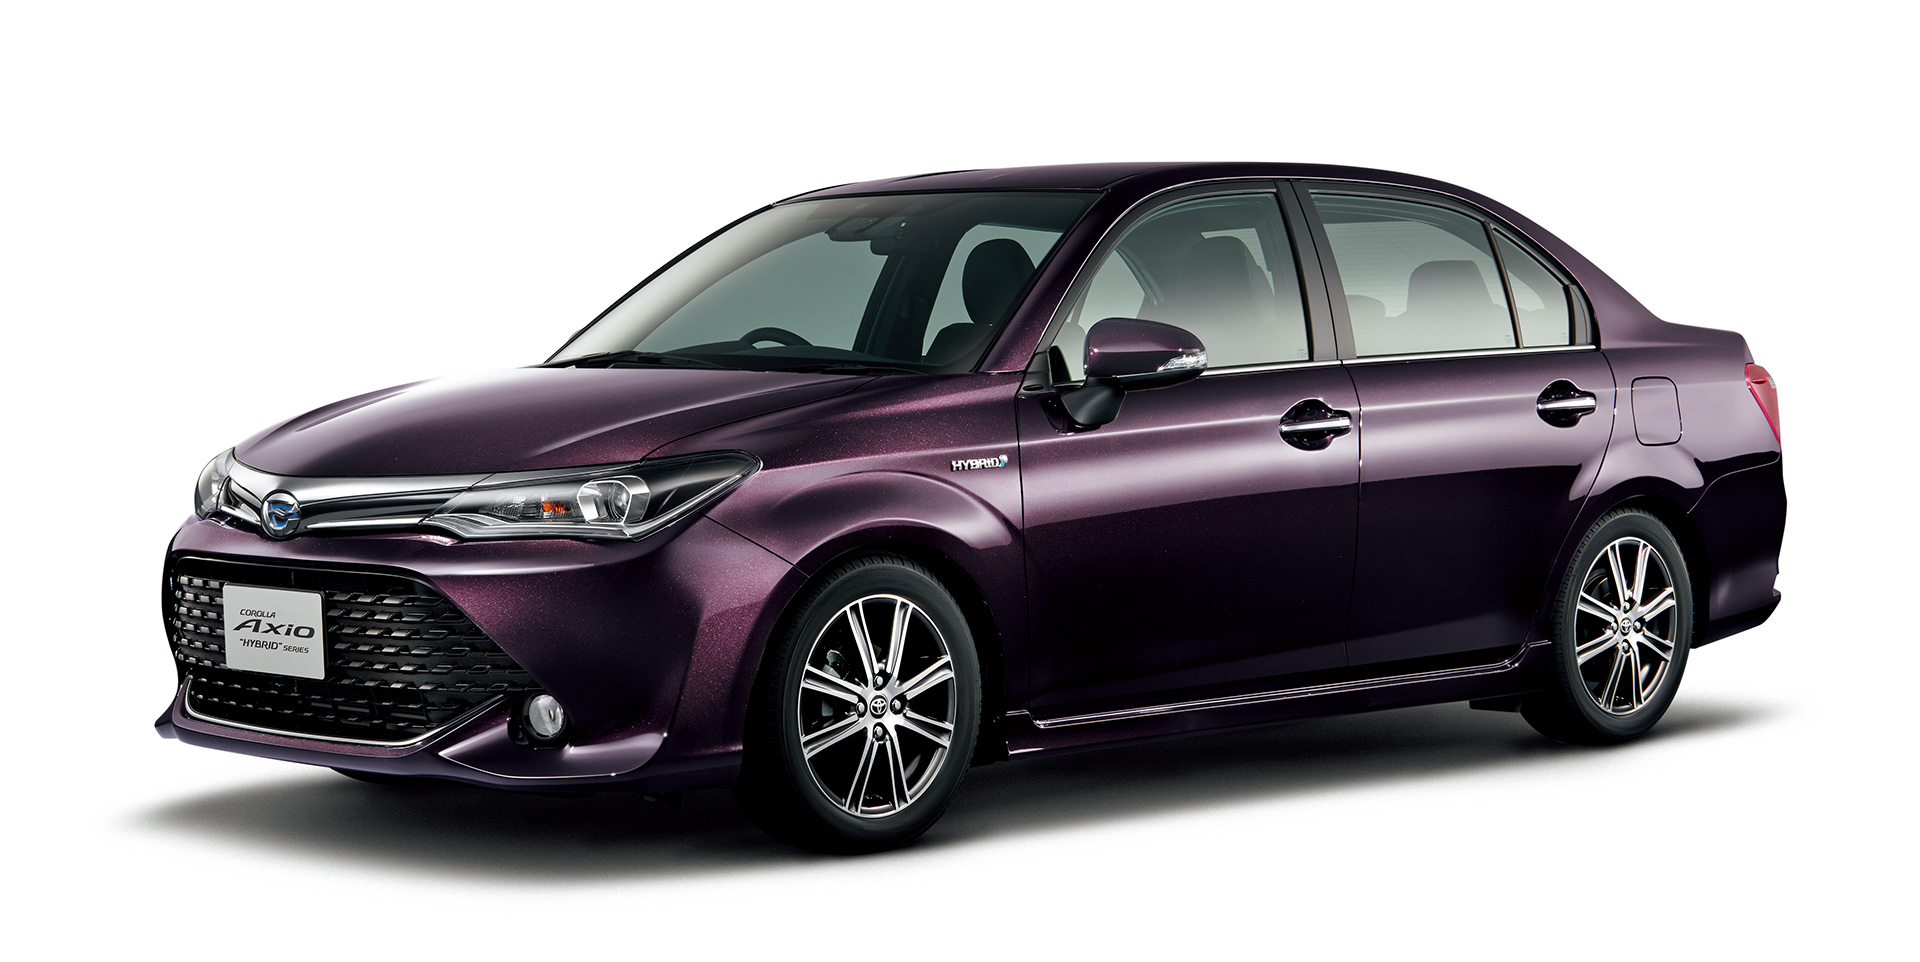 Generasi Terbaru Toyota Corolla Dirilis Maret 2018 AutonetMagz